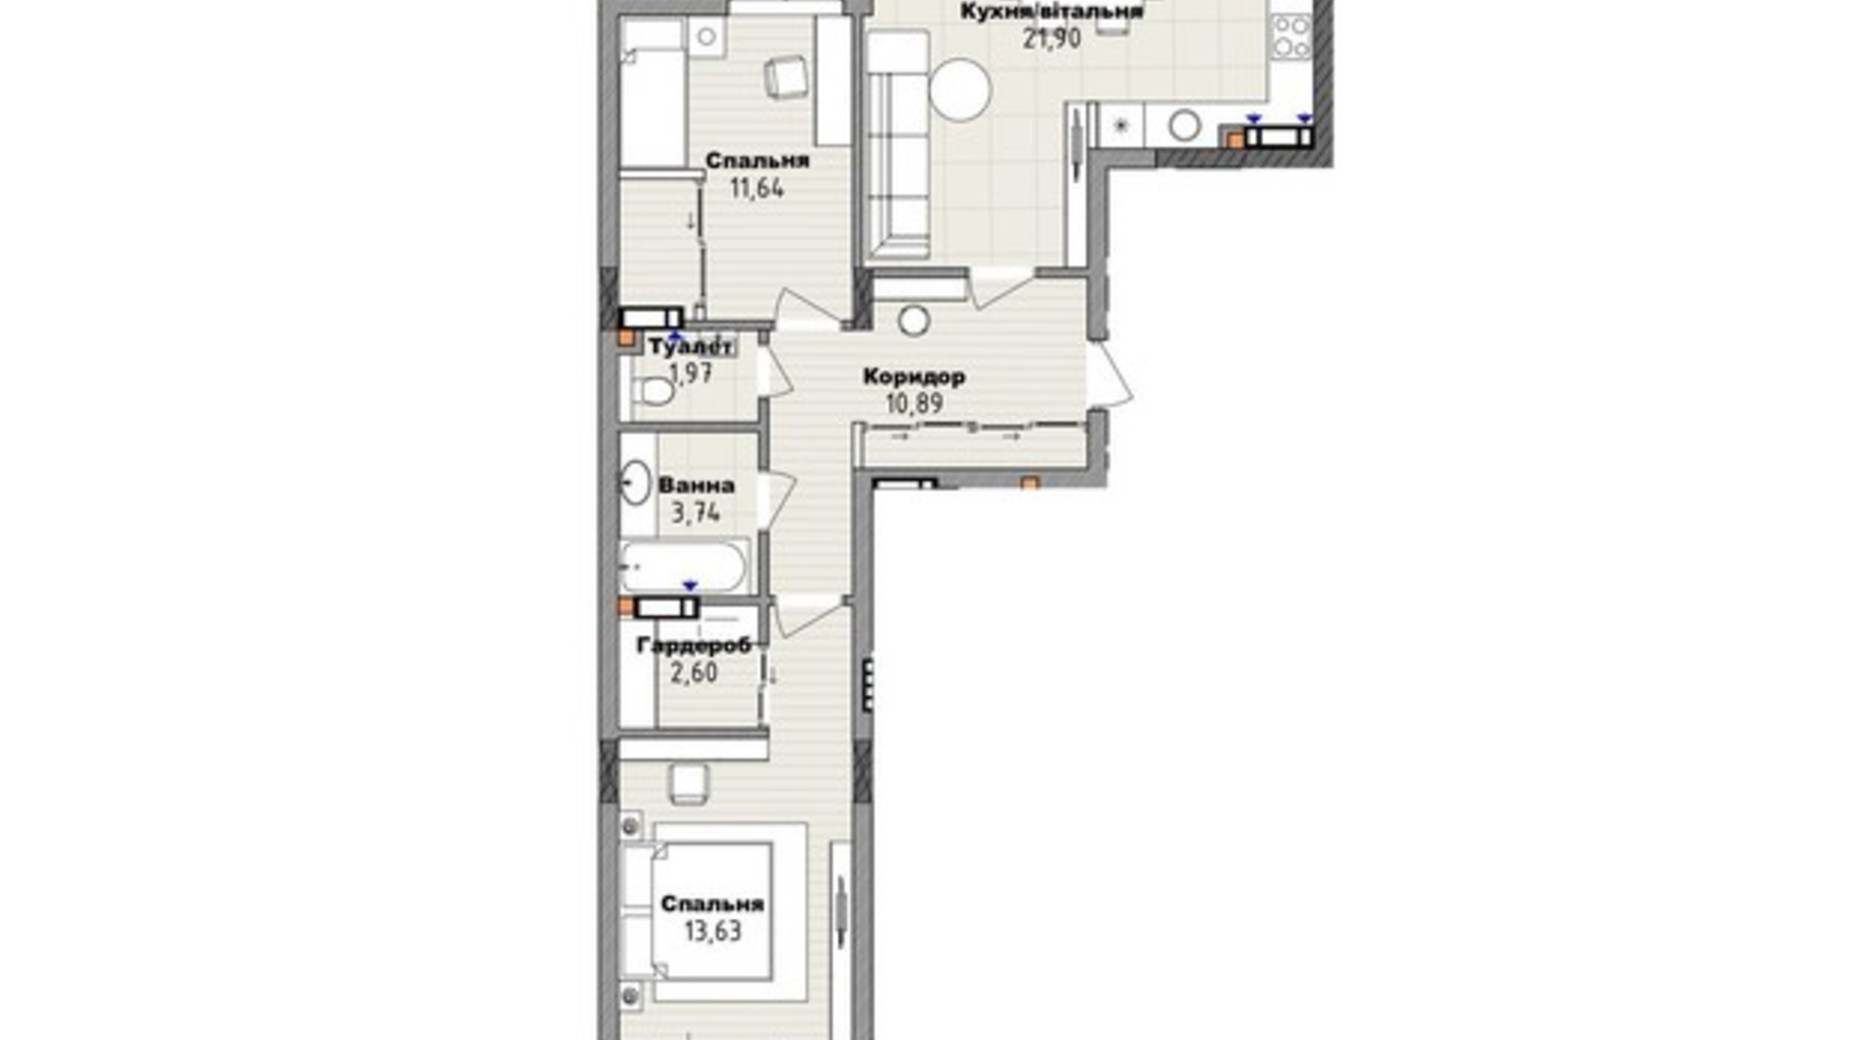 Планировка 2-комнатной квартиры в Клубный дом San Marco 70.2 м², фото 661795